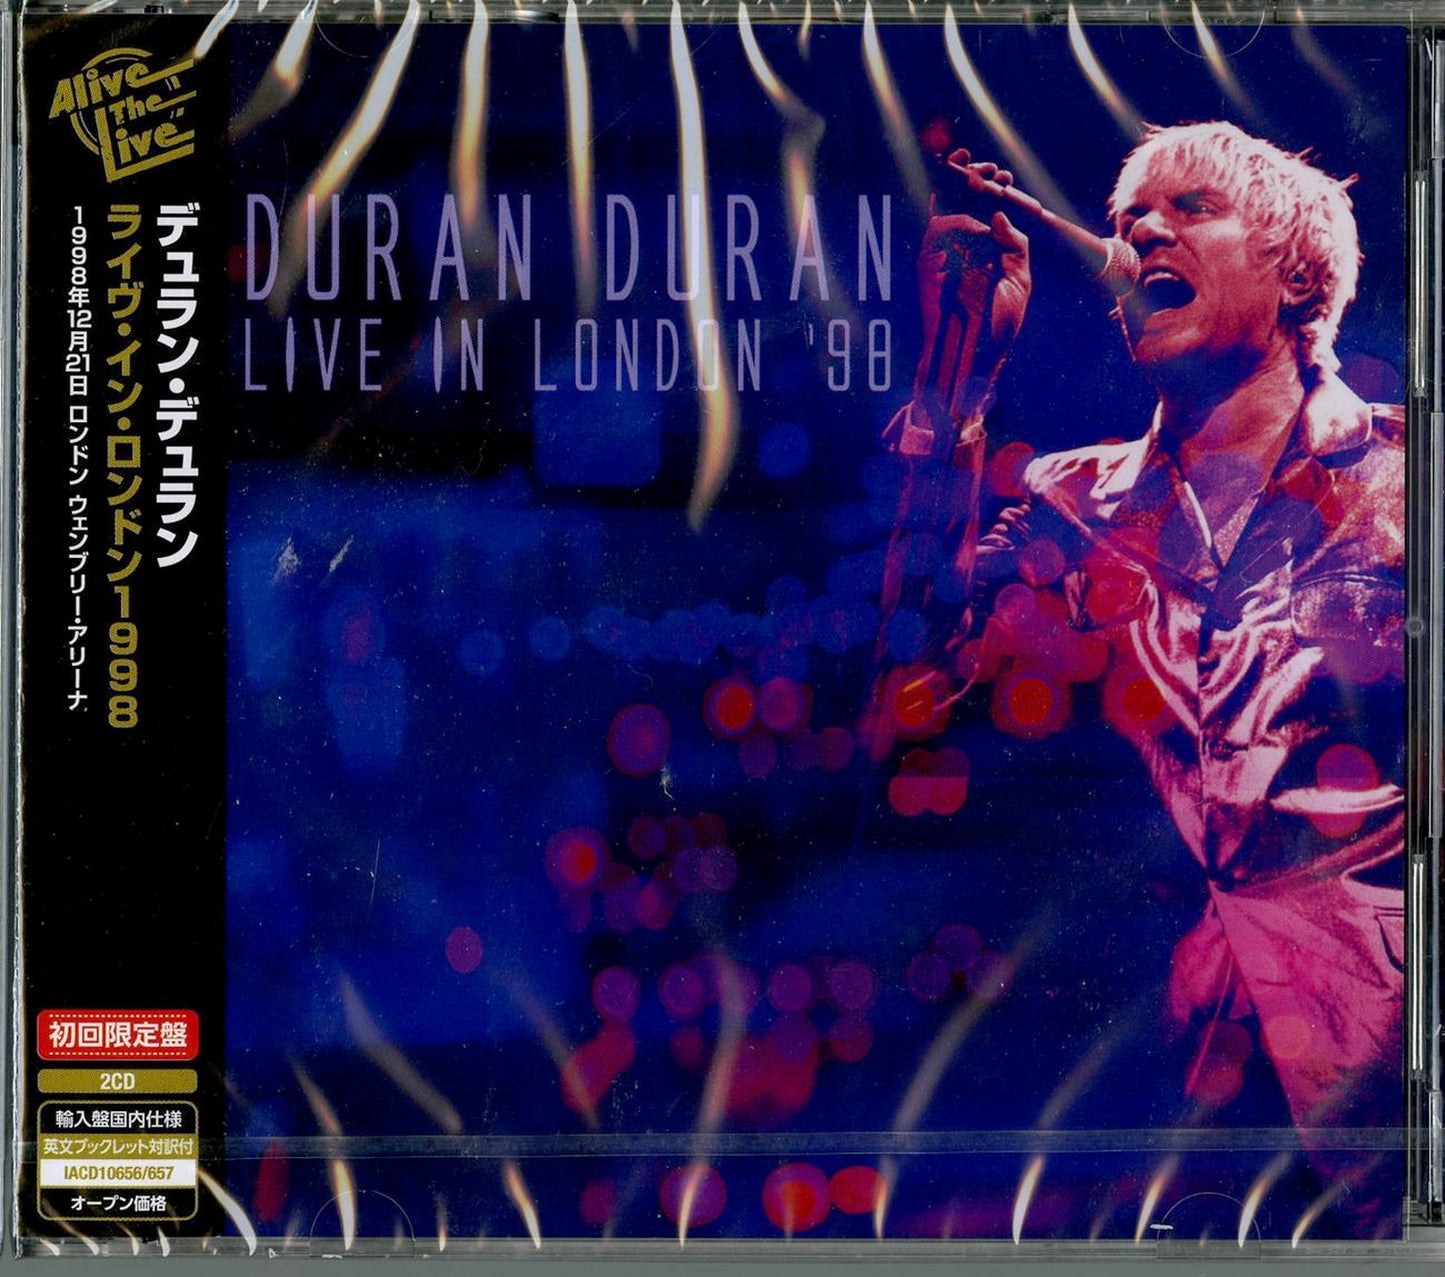 Duran Duran - Live In London '98 - Import 2 CD